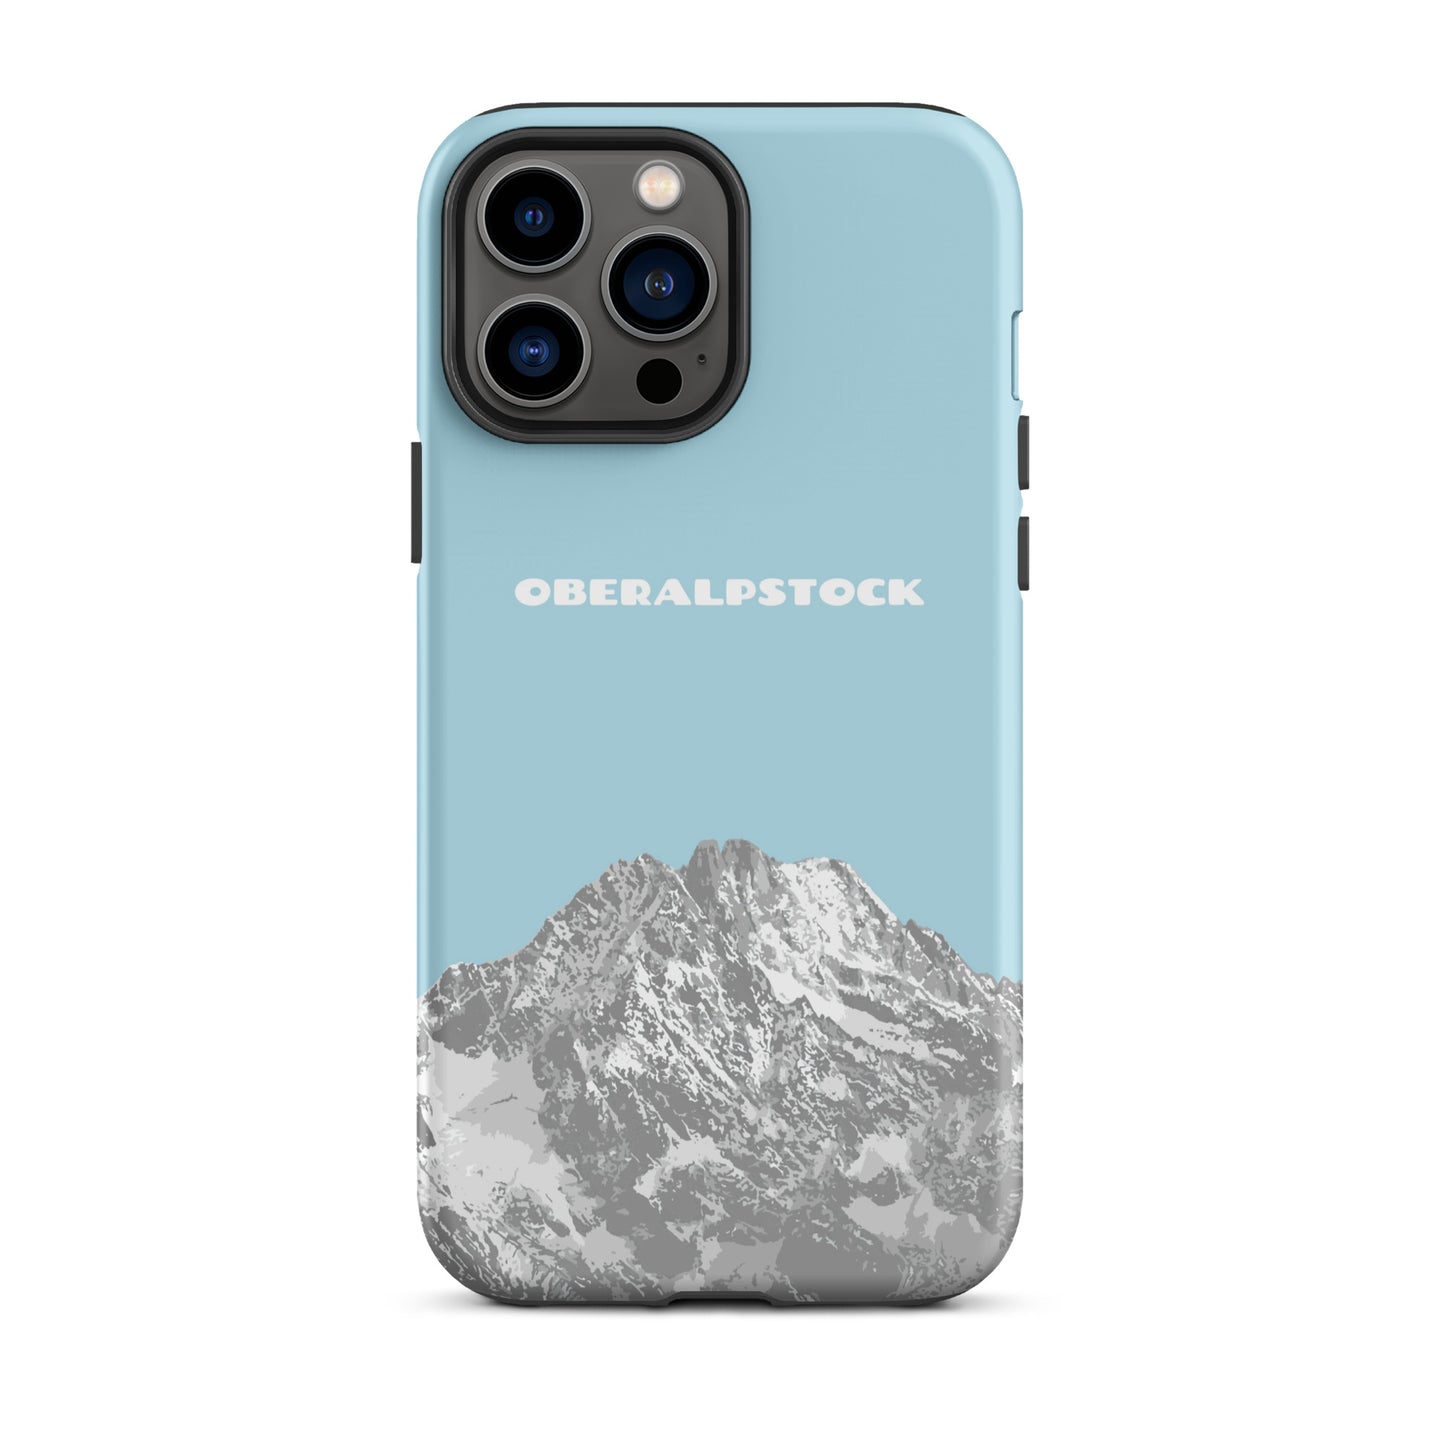 iPhone Case - Oberalpstock - Hellblau